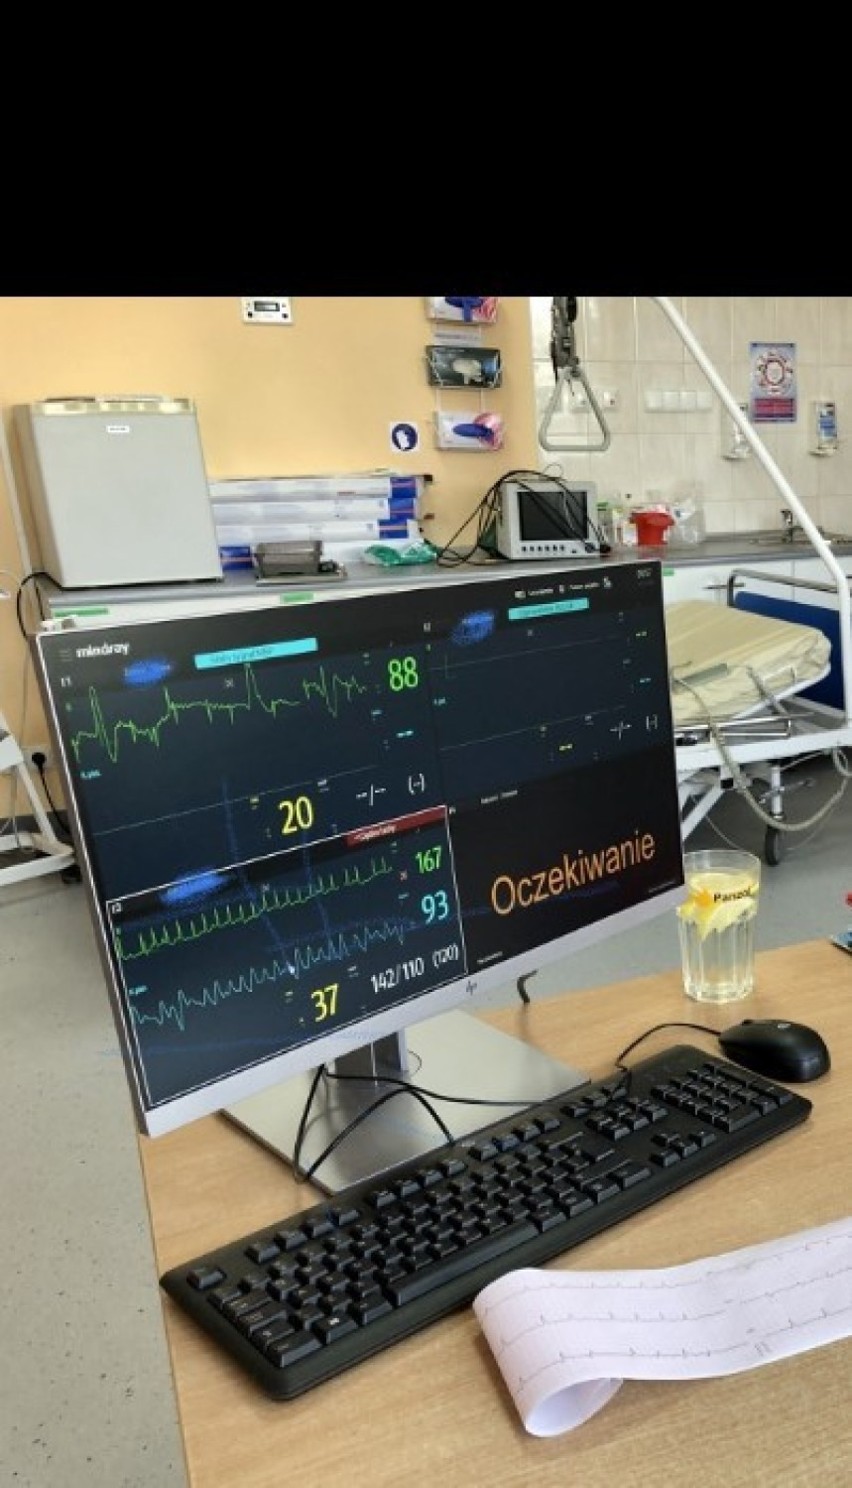 Nowoczesne kardiomonitory trafiły do drezdeneckiego szpitala. Całkowity koszt sprzętu to ponad 100 tys. złotych